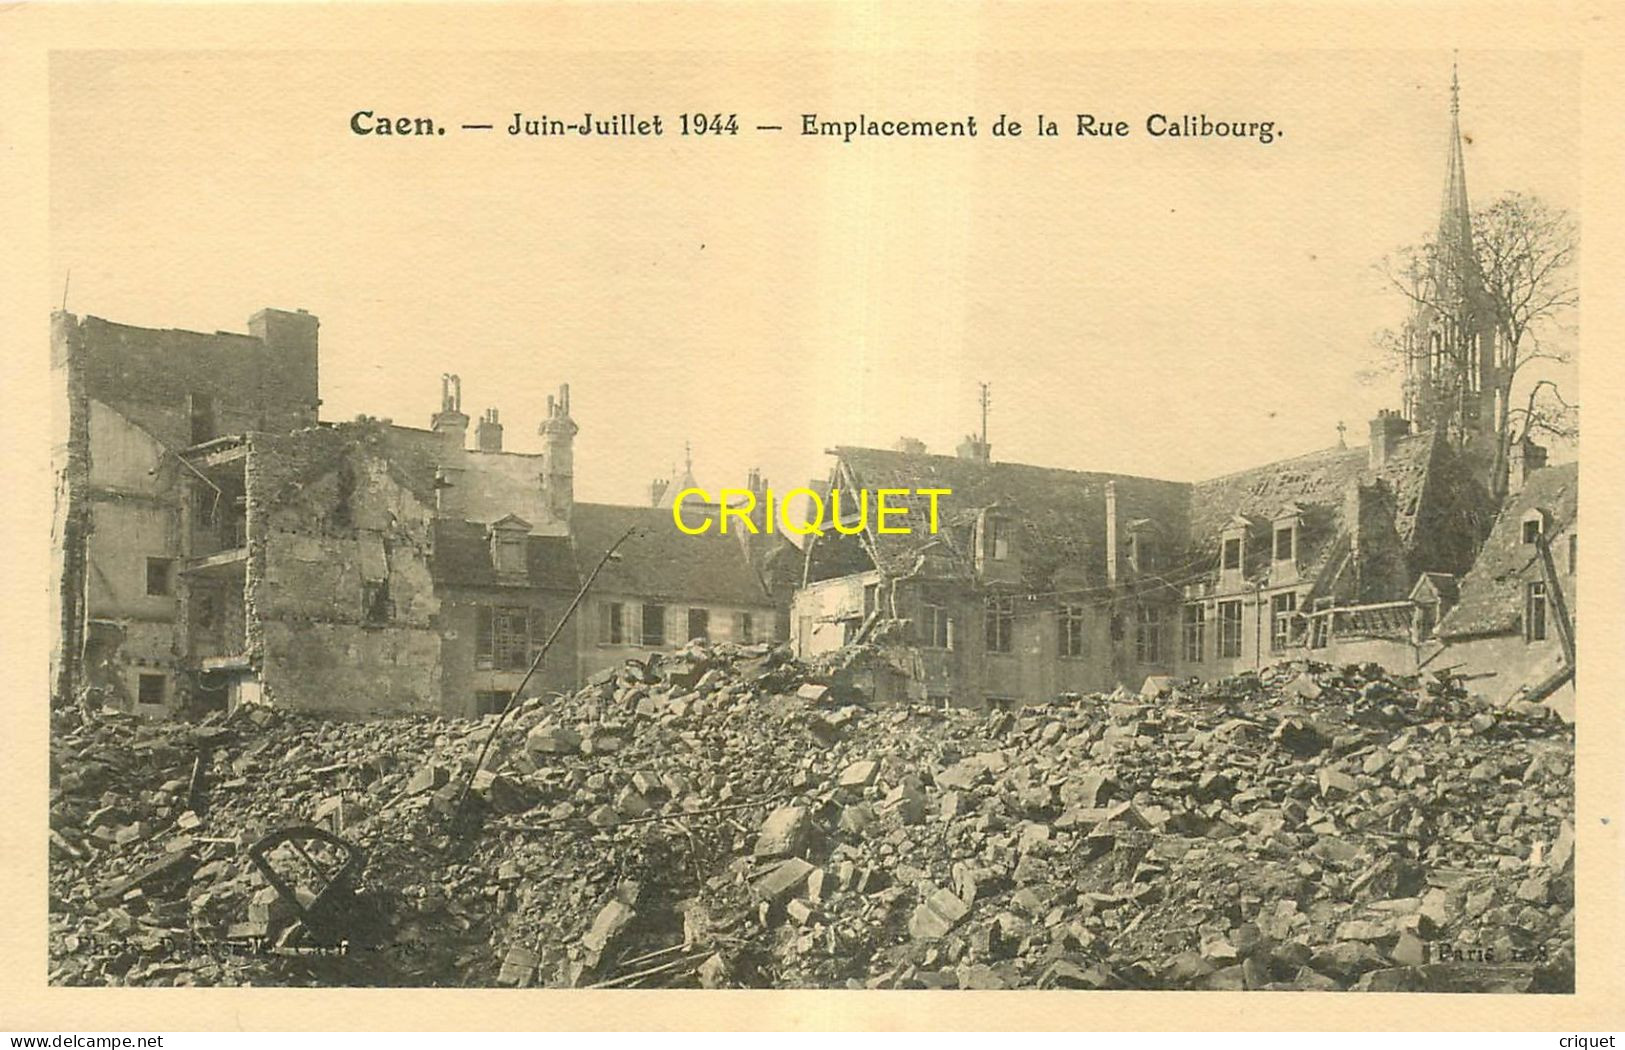 14 Caen, lot de 13 cartes différentes des bombardements de juin-juillet 1944